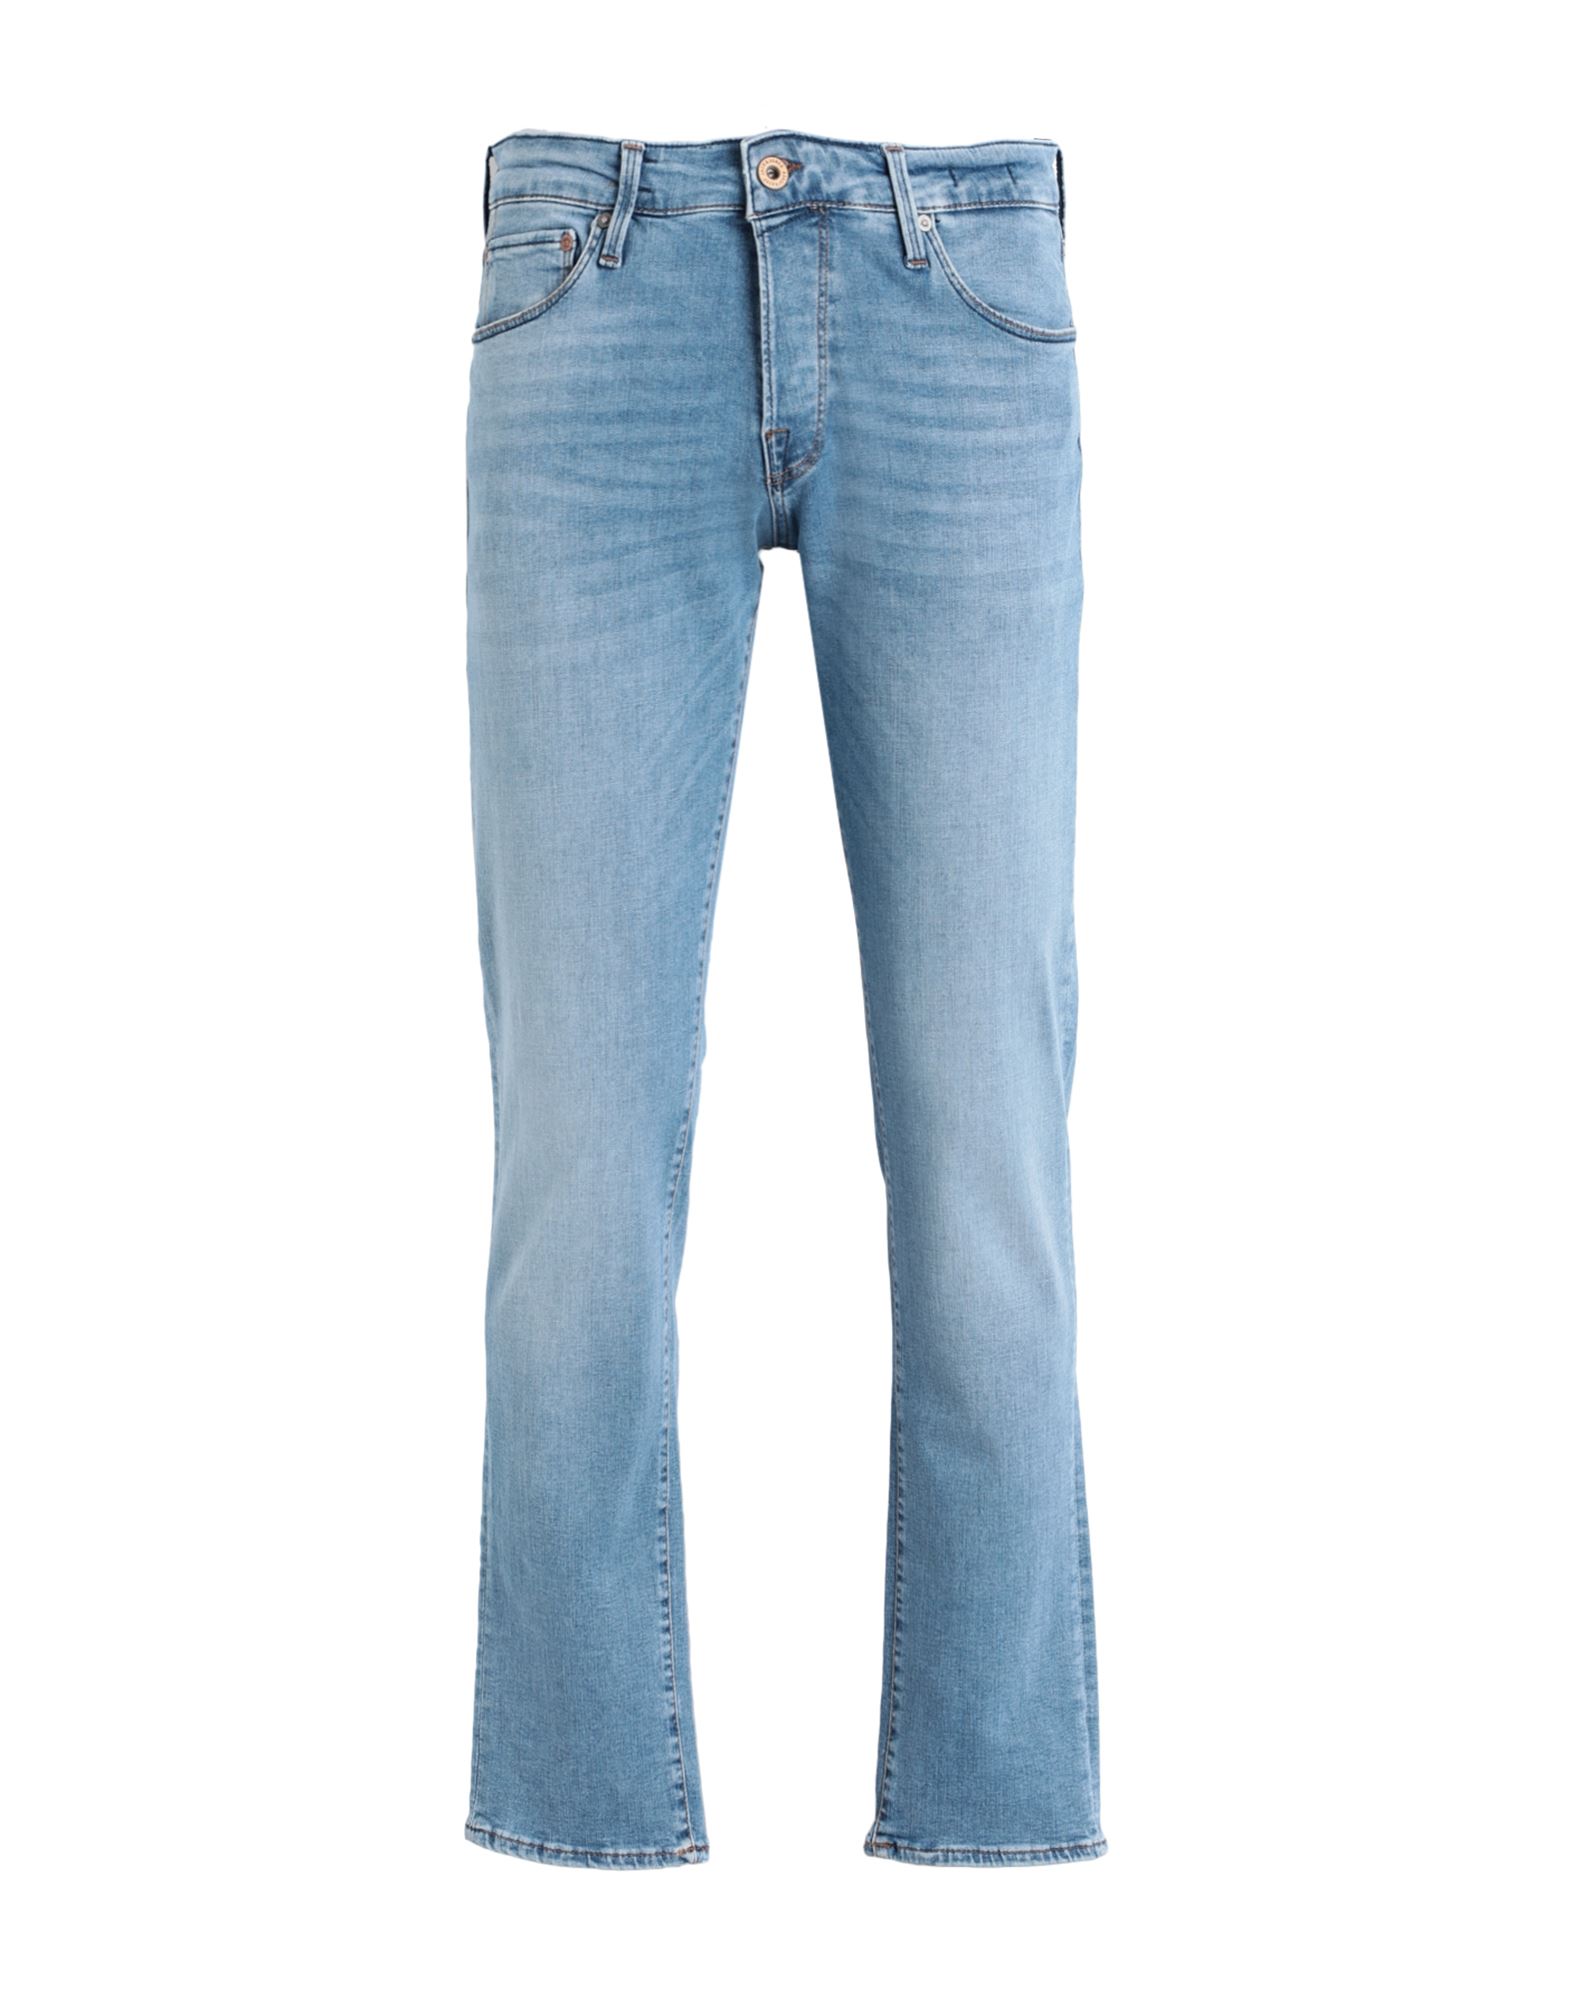 Shop Jack & Jones Man Jeans Blue Size 29w-32l Cotton, Organic Cotton, Elastomultiester, Recycled Cotton,